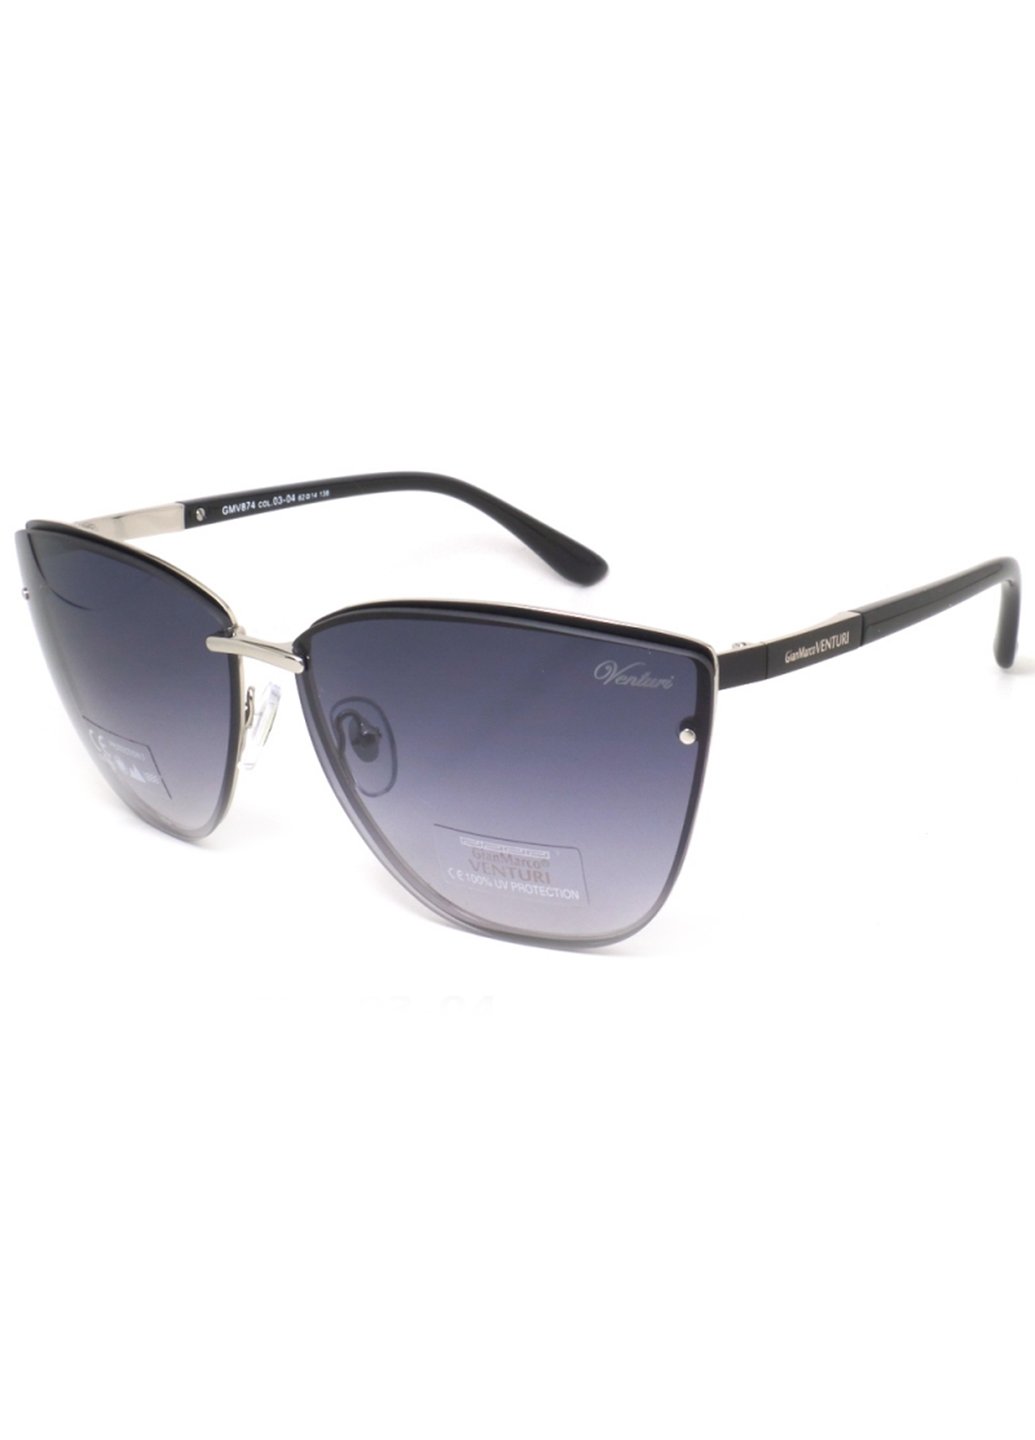 Купить Женские солнцезащитные очки Gian Marco VENTURI GMV874 130001 - Черный в интернет-магазине